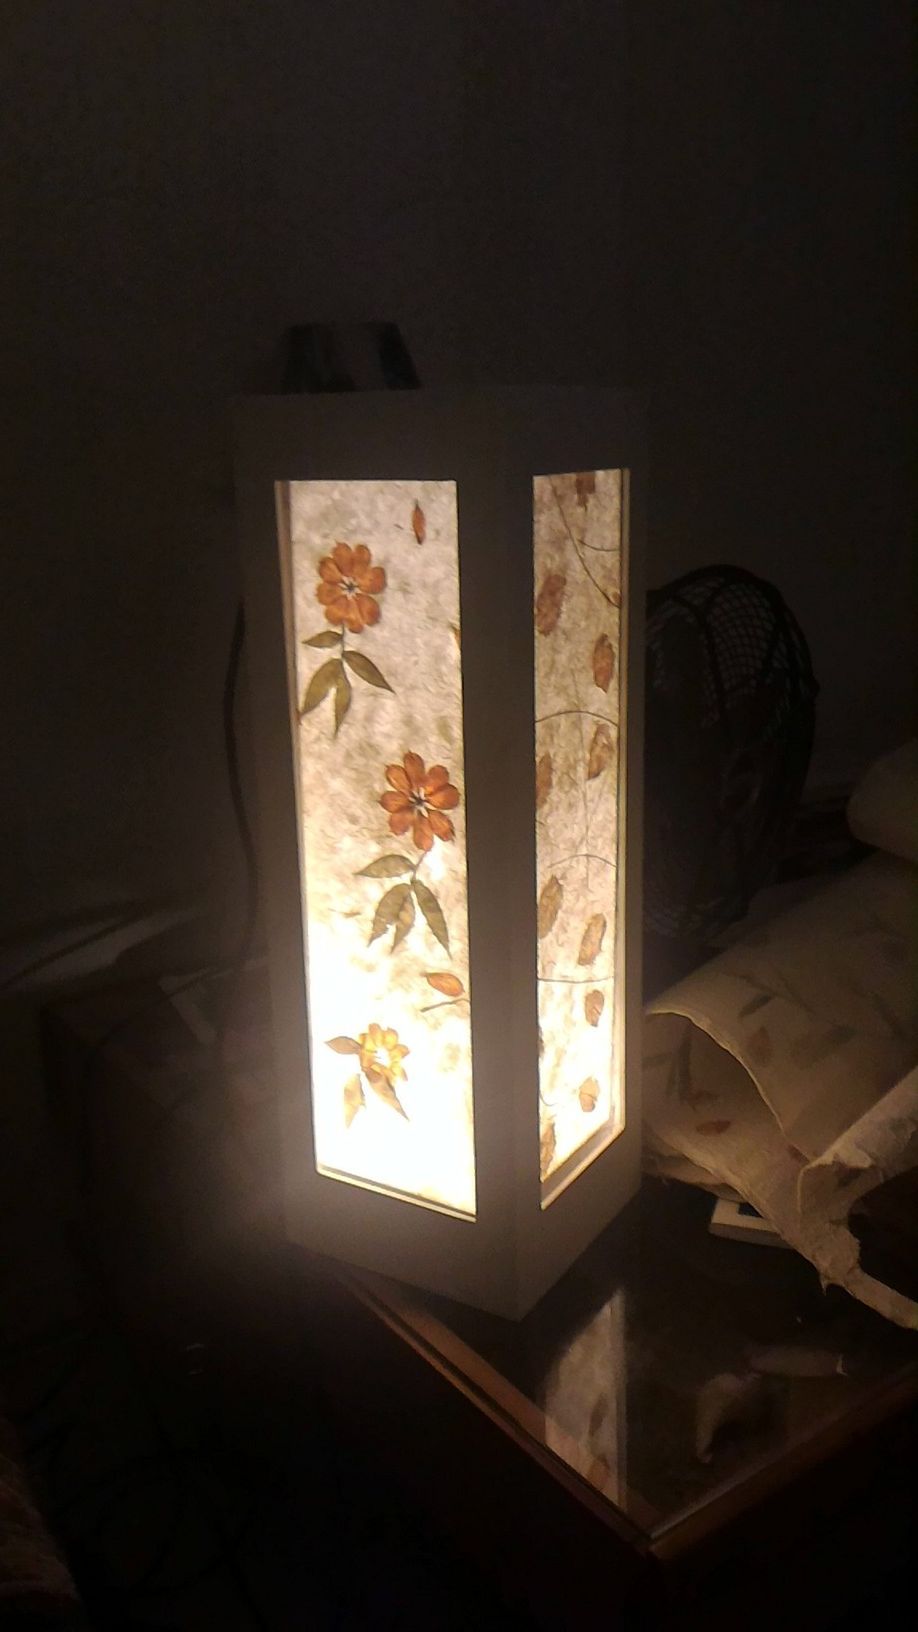 Lampe en bois avec cadre d ambiance amovible P 20170906 221202.jpg